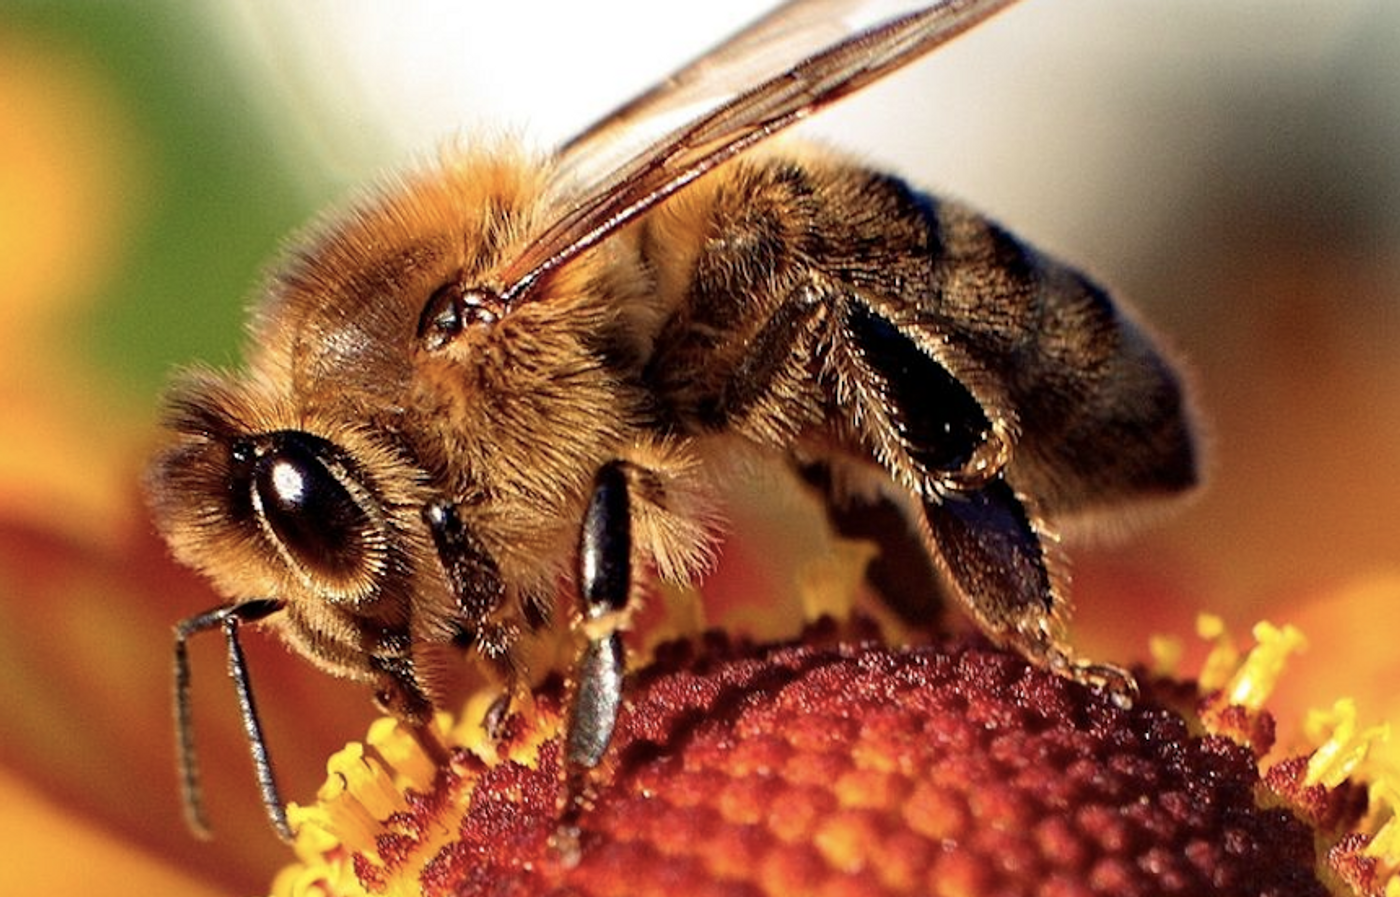 Honeybee / Credit: Wikimedia Commons/Maciej A. Czyzewski